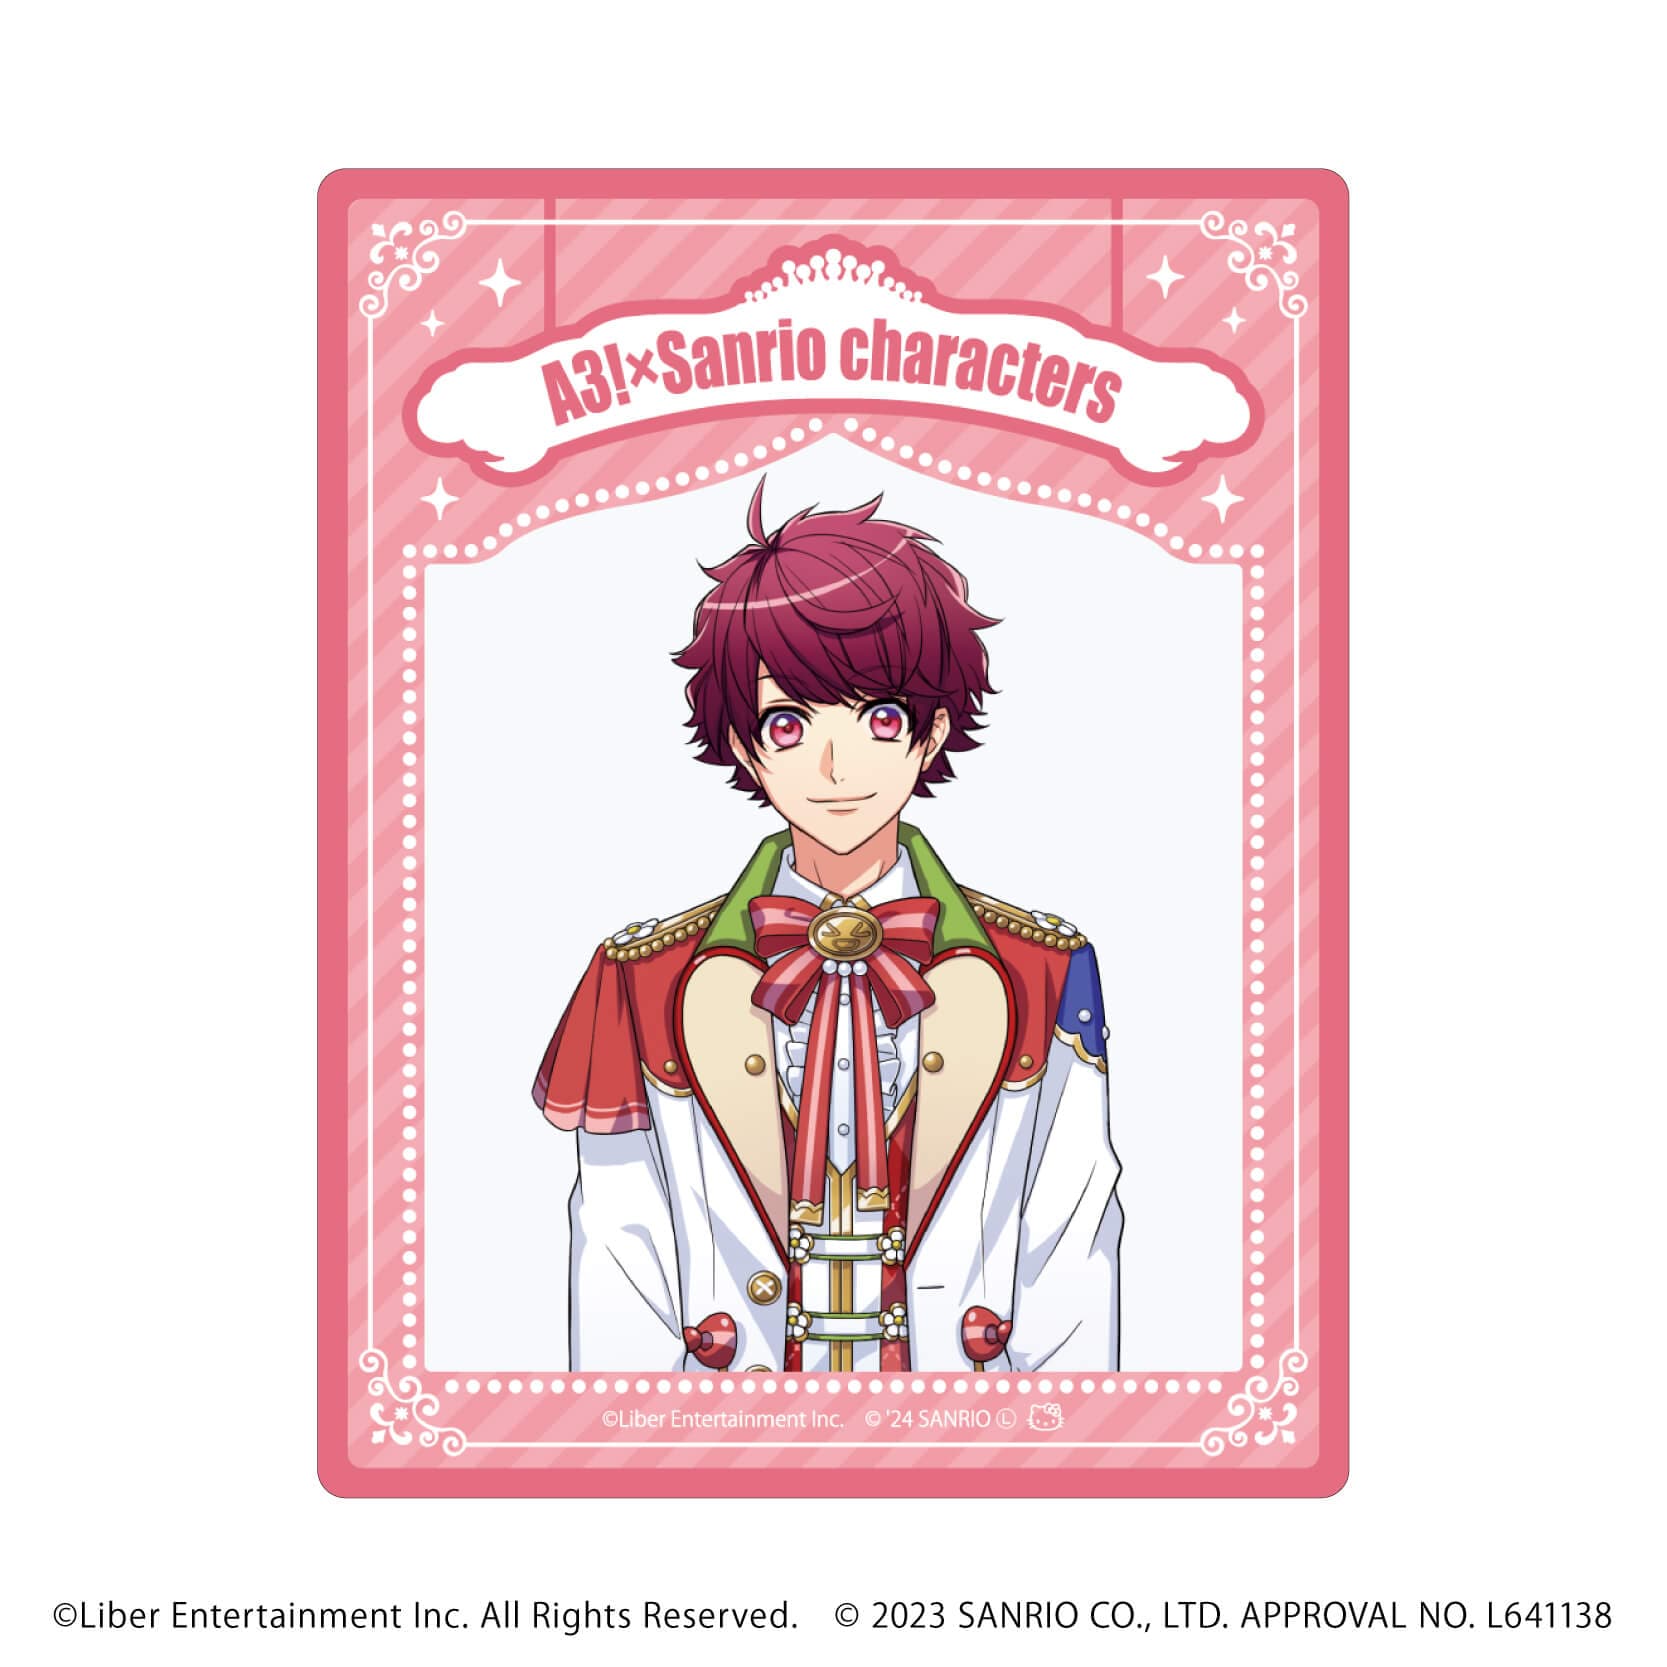 アクリルカード「A3!×Sanrio characters」07/S＆S ブラインド(12種)(公式イラスト)